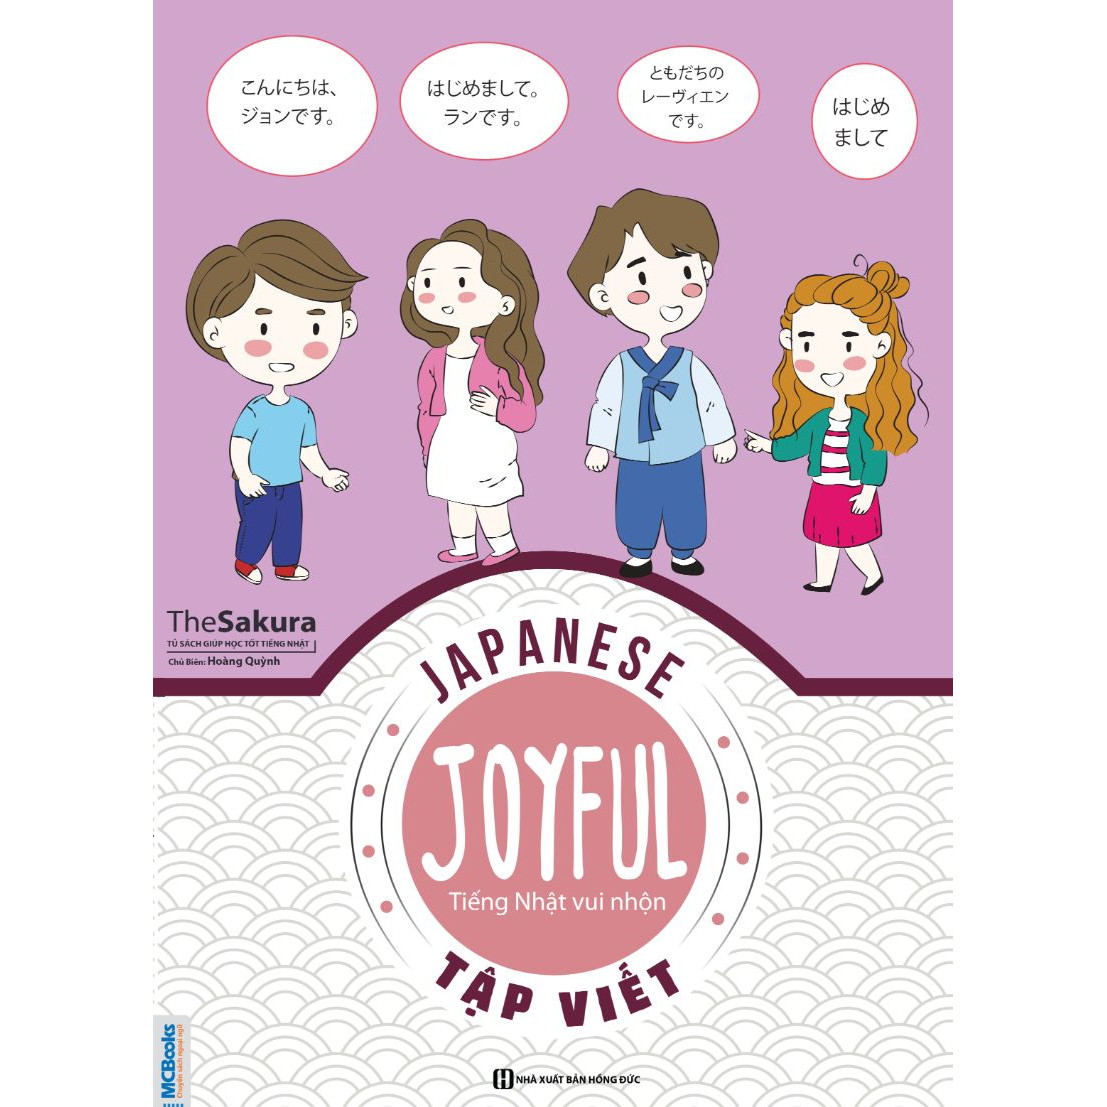 Joyful Japanese - Tiếng Nhật Vui Nhộn - Tập Viết ( tặng kèm bút tạo hình ngộ nghĩnh )